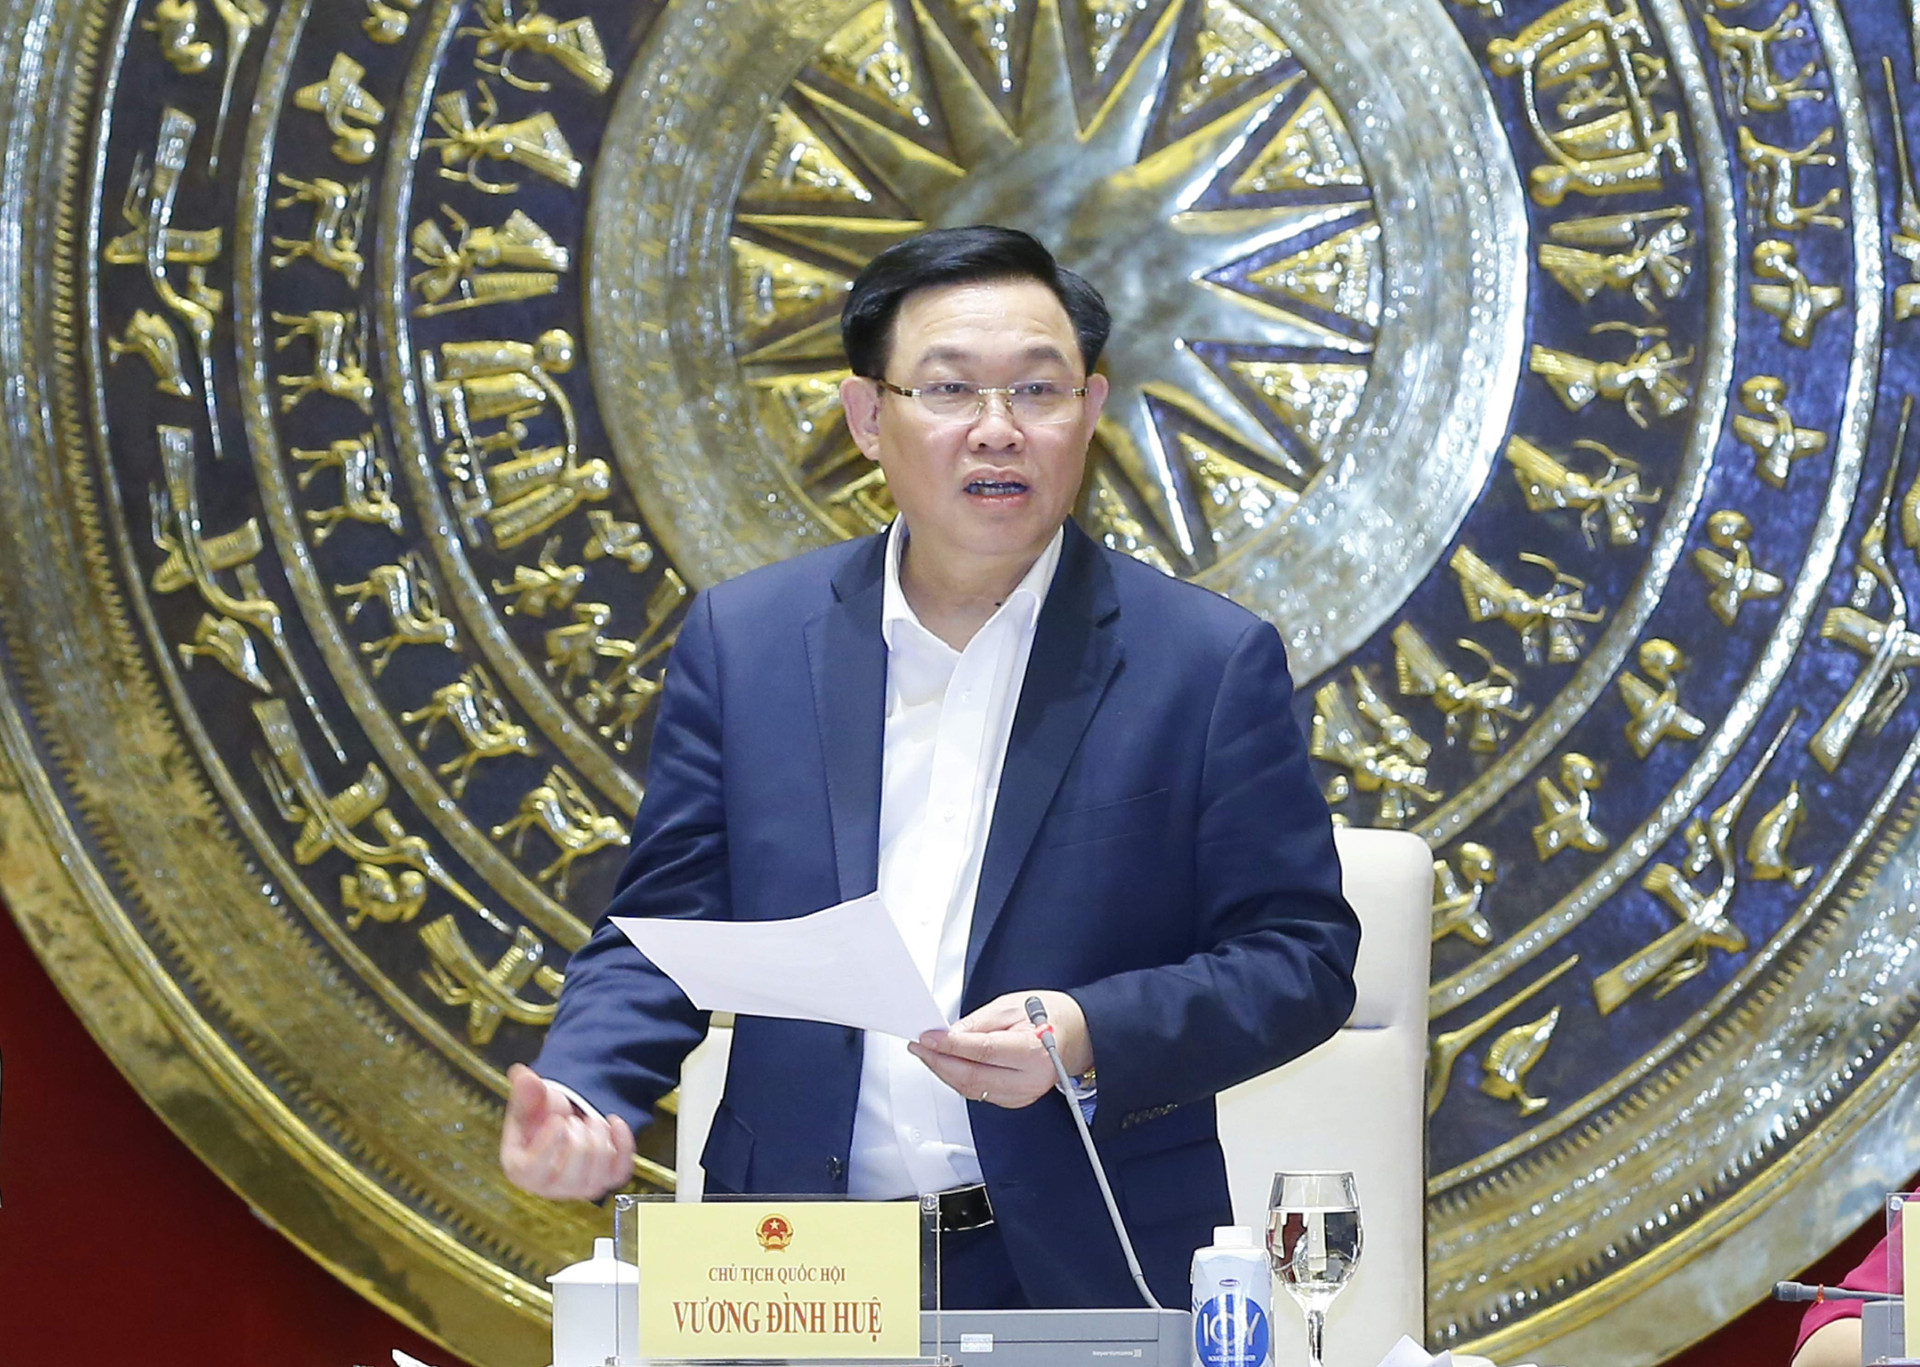 Chủ tịch Quốc hội Vương Đình Huệ phát biểu tại buổi làm việc-Ảnh: Quang Vinh